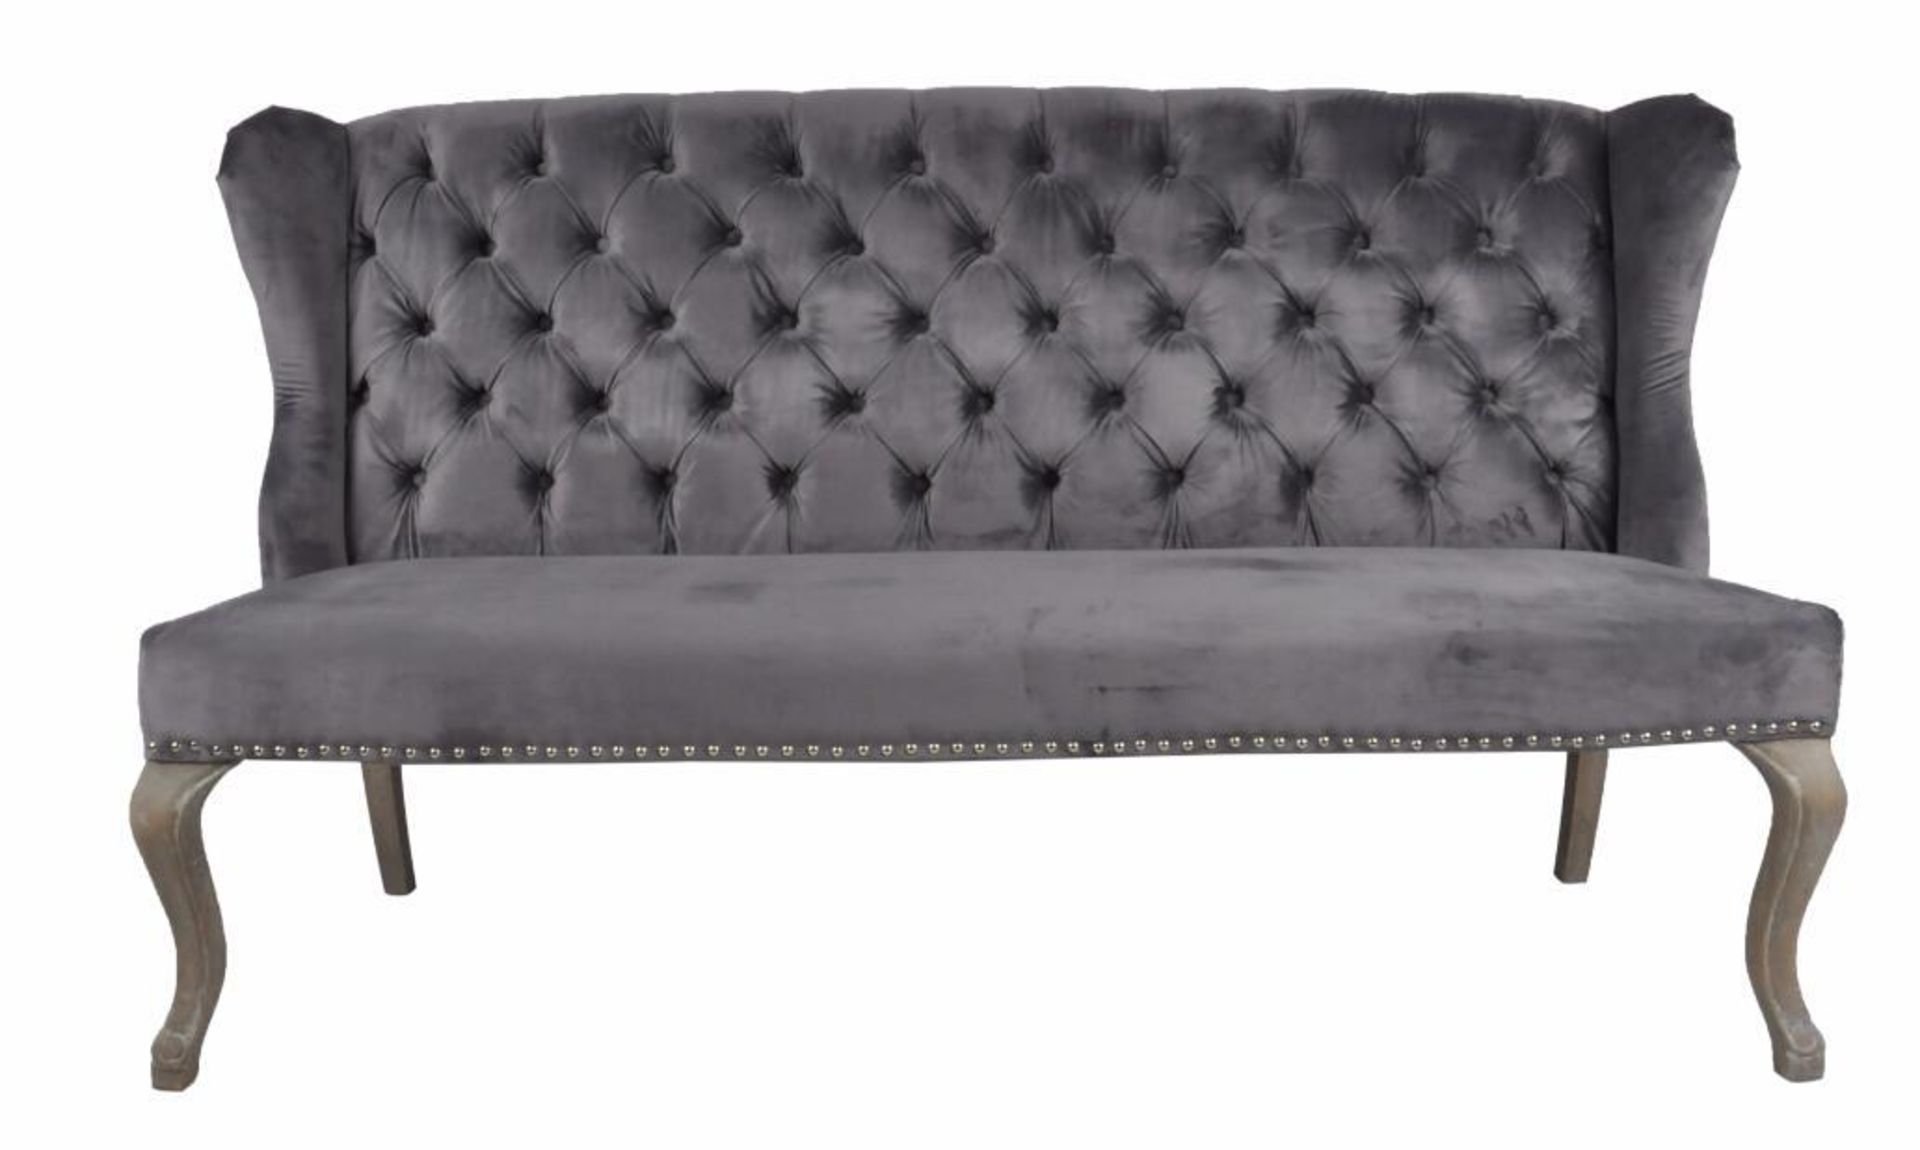 1 x HOUSE OF SPARKLES 'Jasper' Luxury Dining Sofa Bench - Richly Upholstered In Dark Grey Velvet - - Image 2 of 4